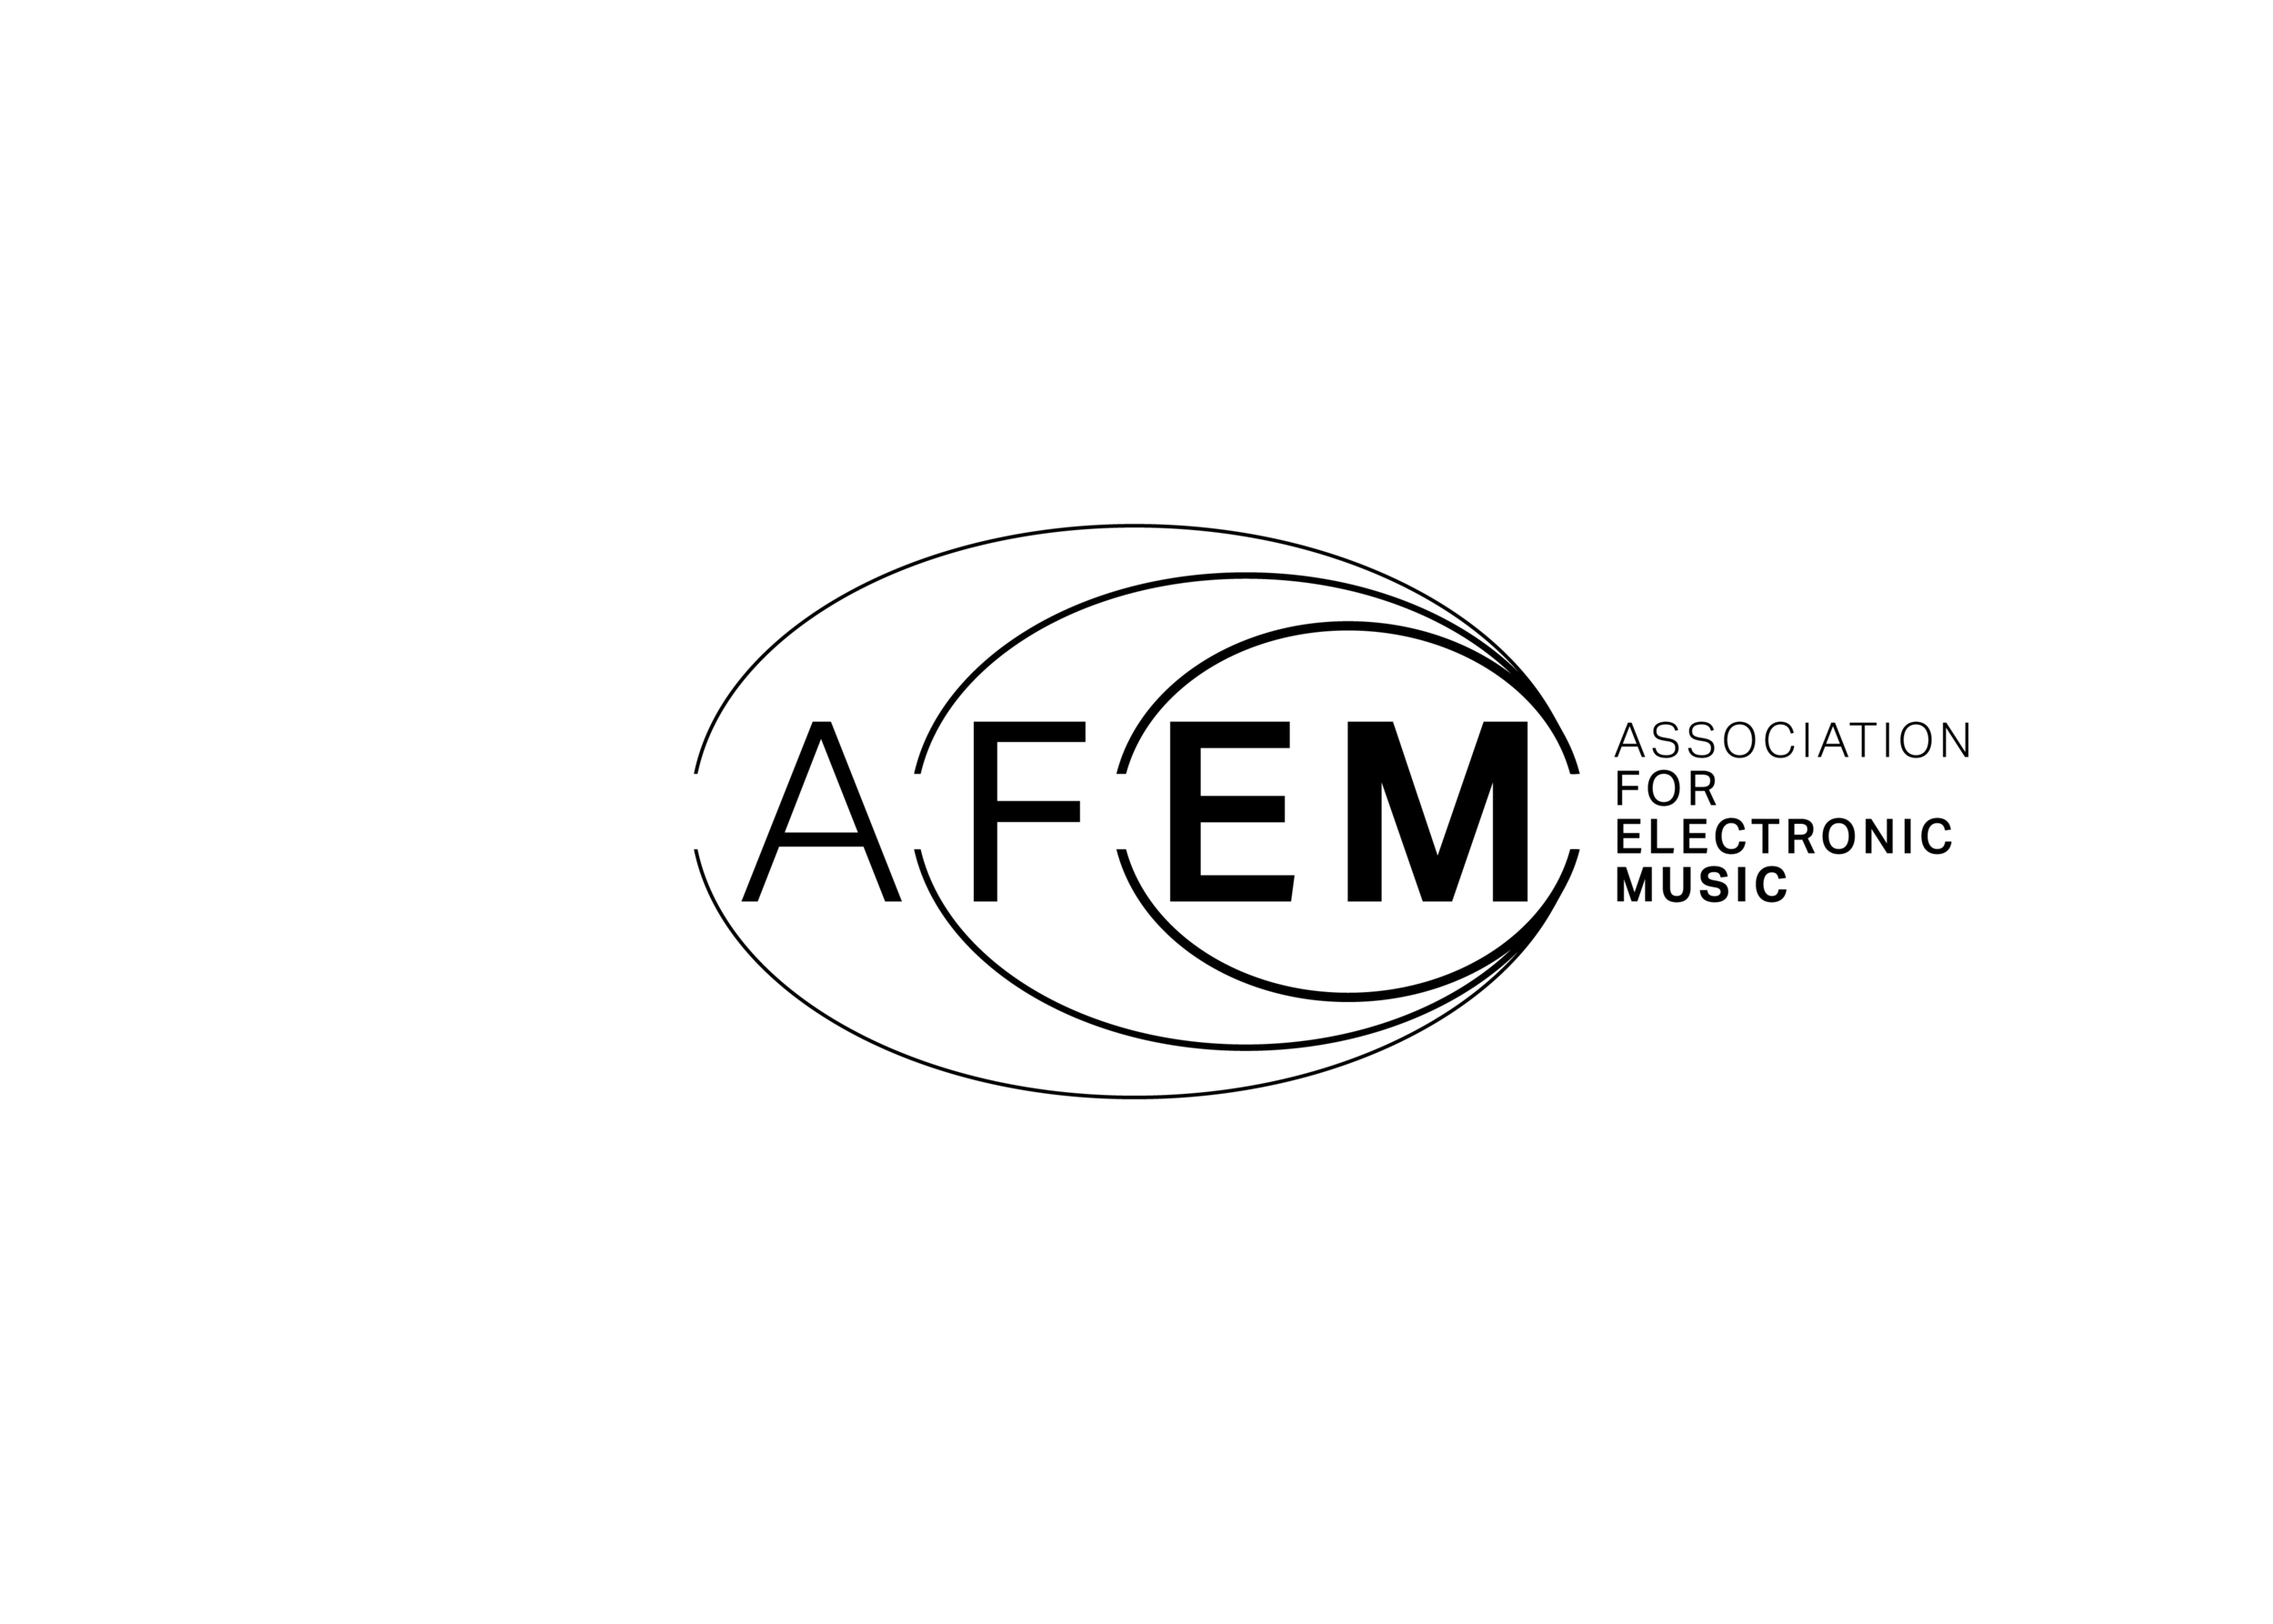 Logotipo AFEM - Archivos finales8 (Logotipo negro sobre fondo transparente).png